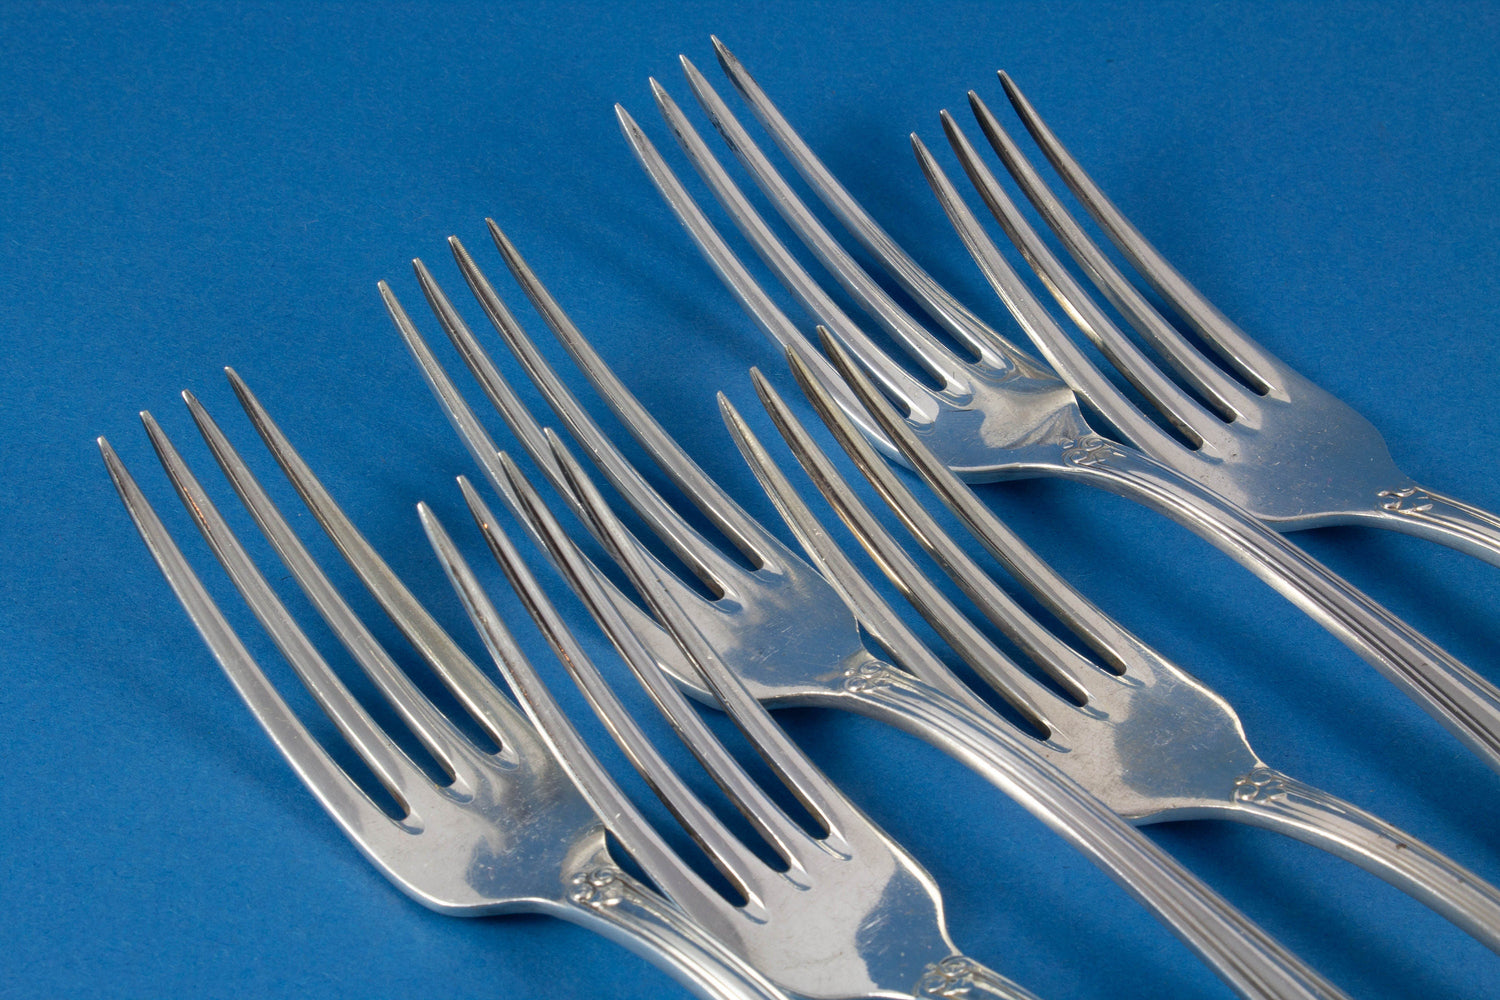 6 table forks from Wellner Mozart, forks